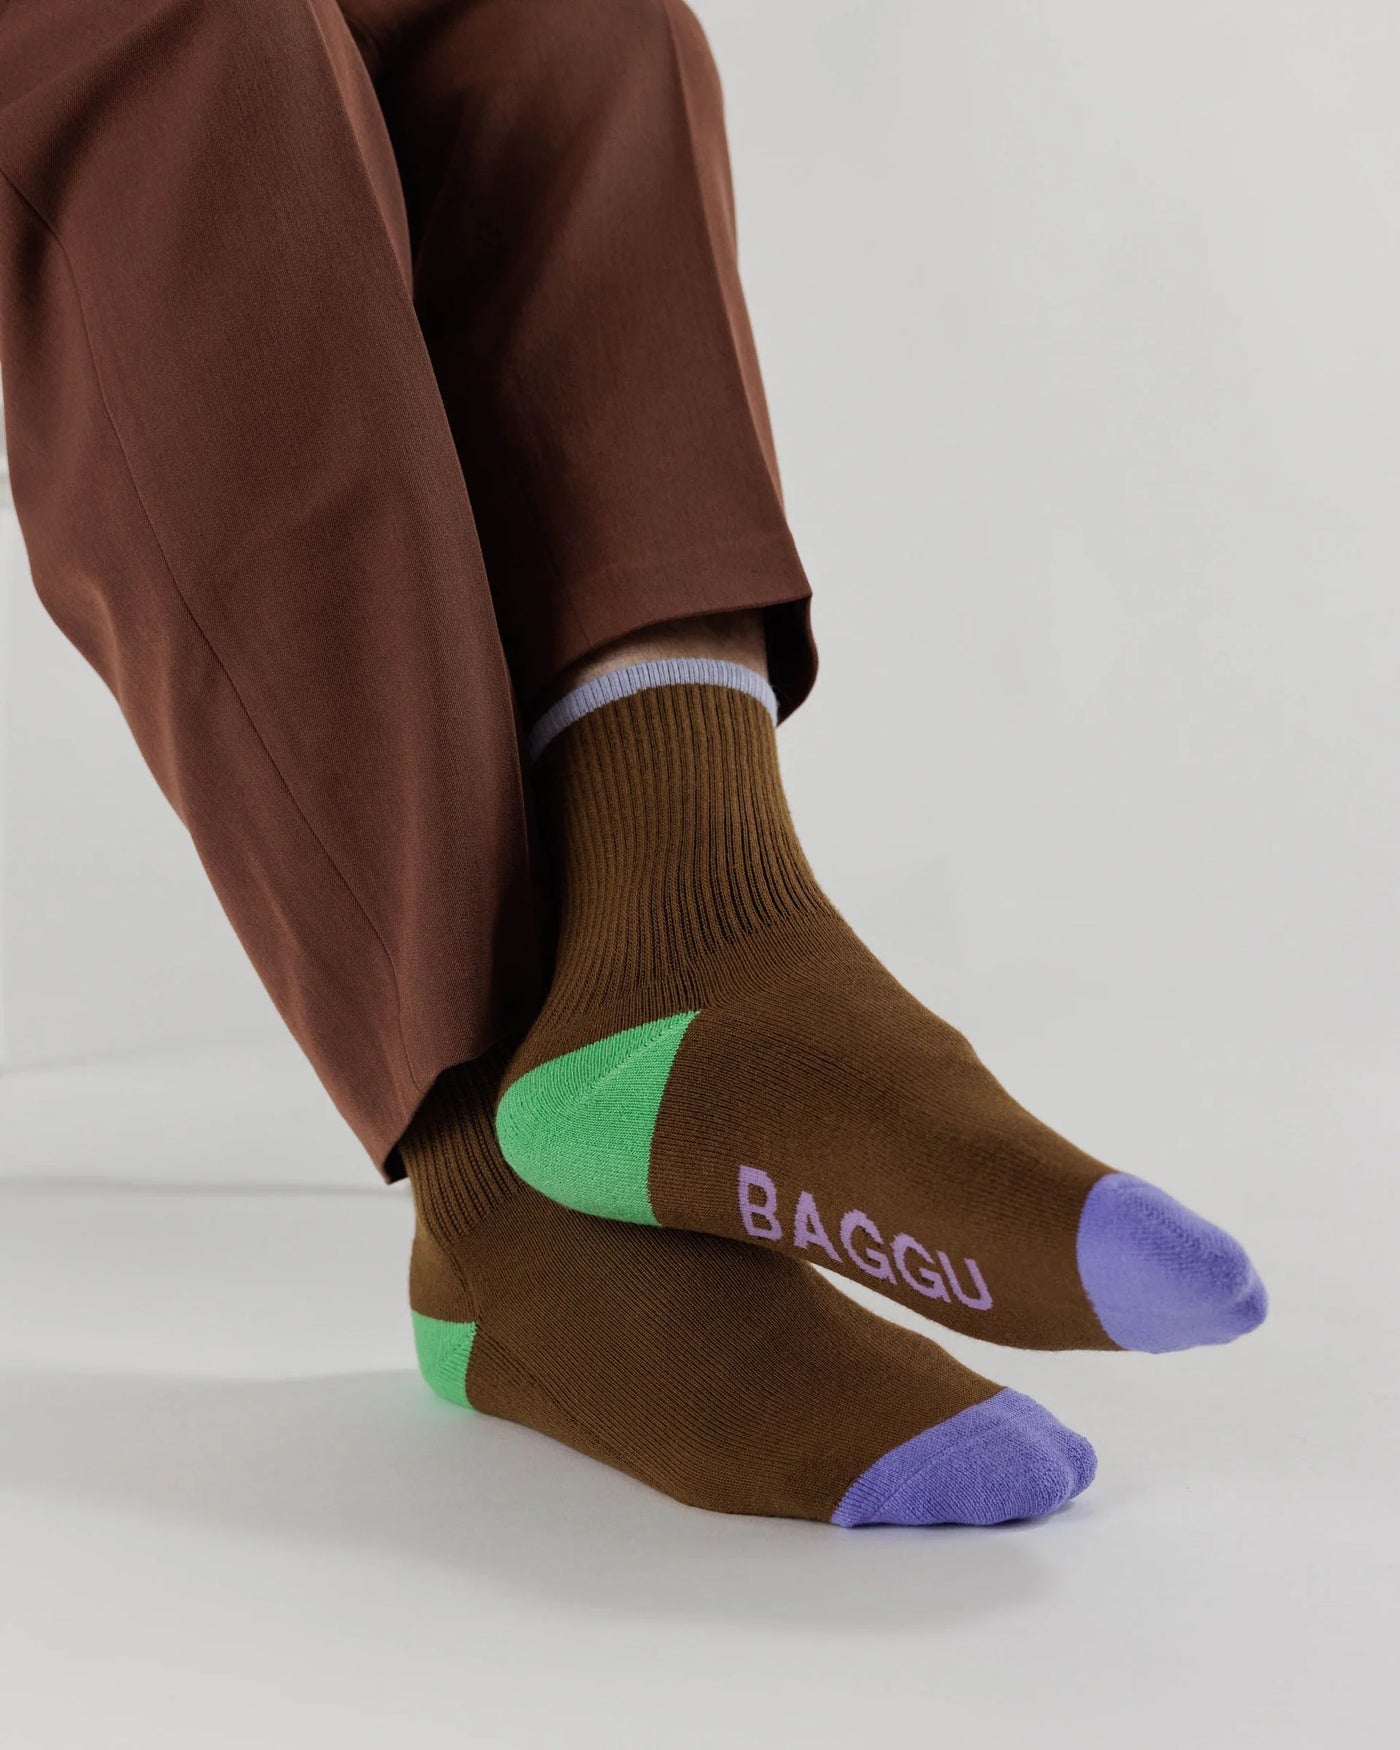 Baggu Socks